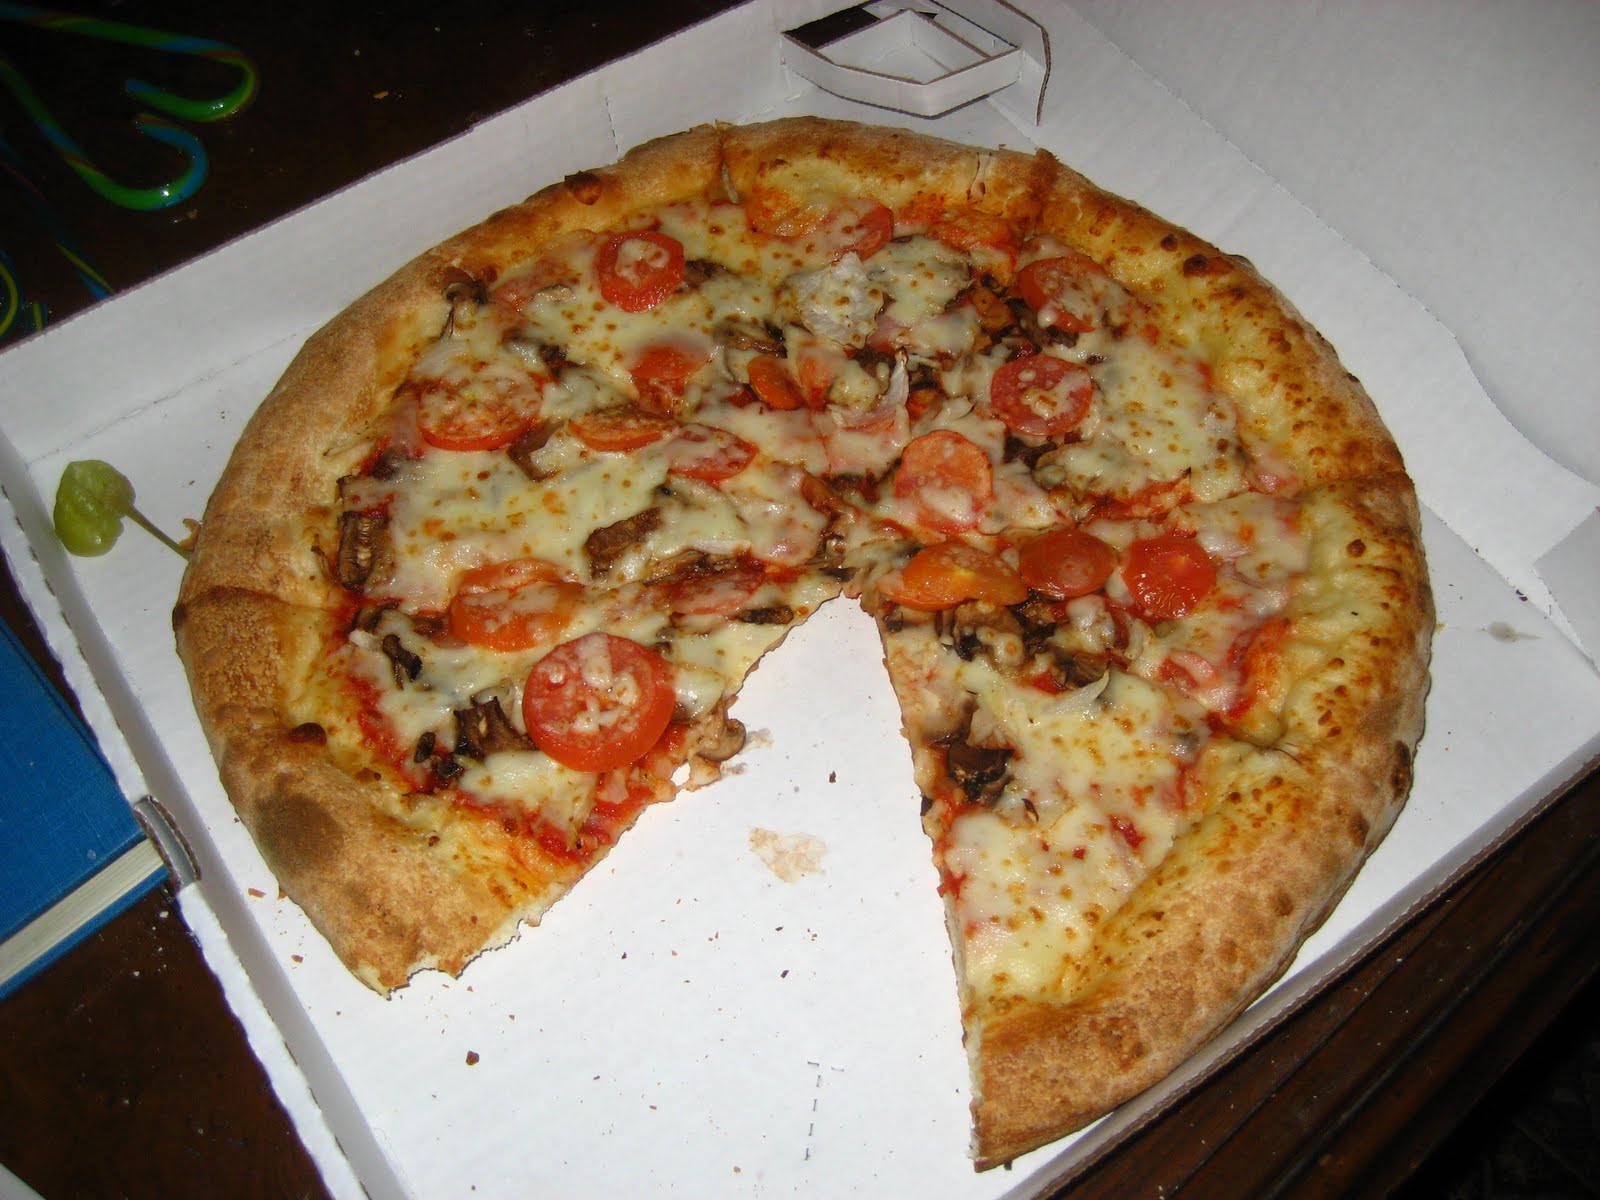 Baltimore Pizza Club: Papa John's